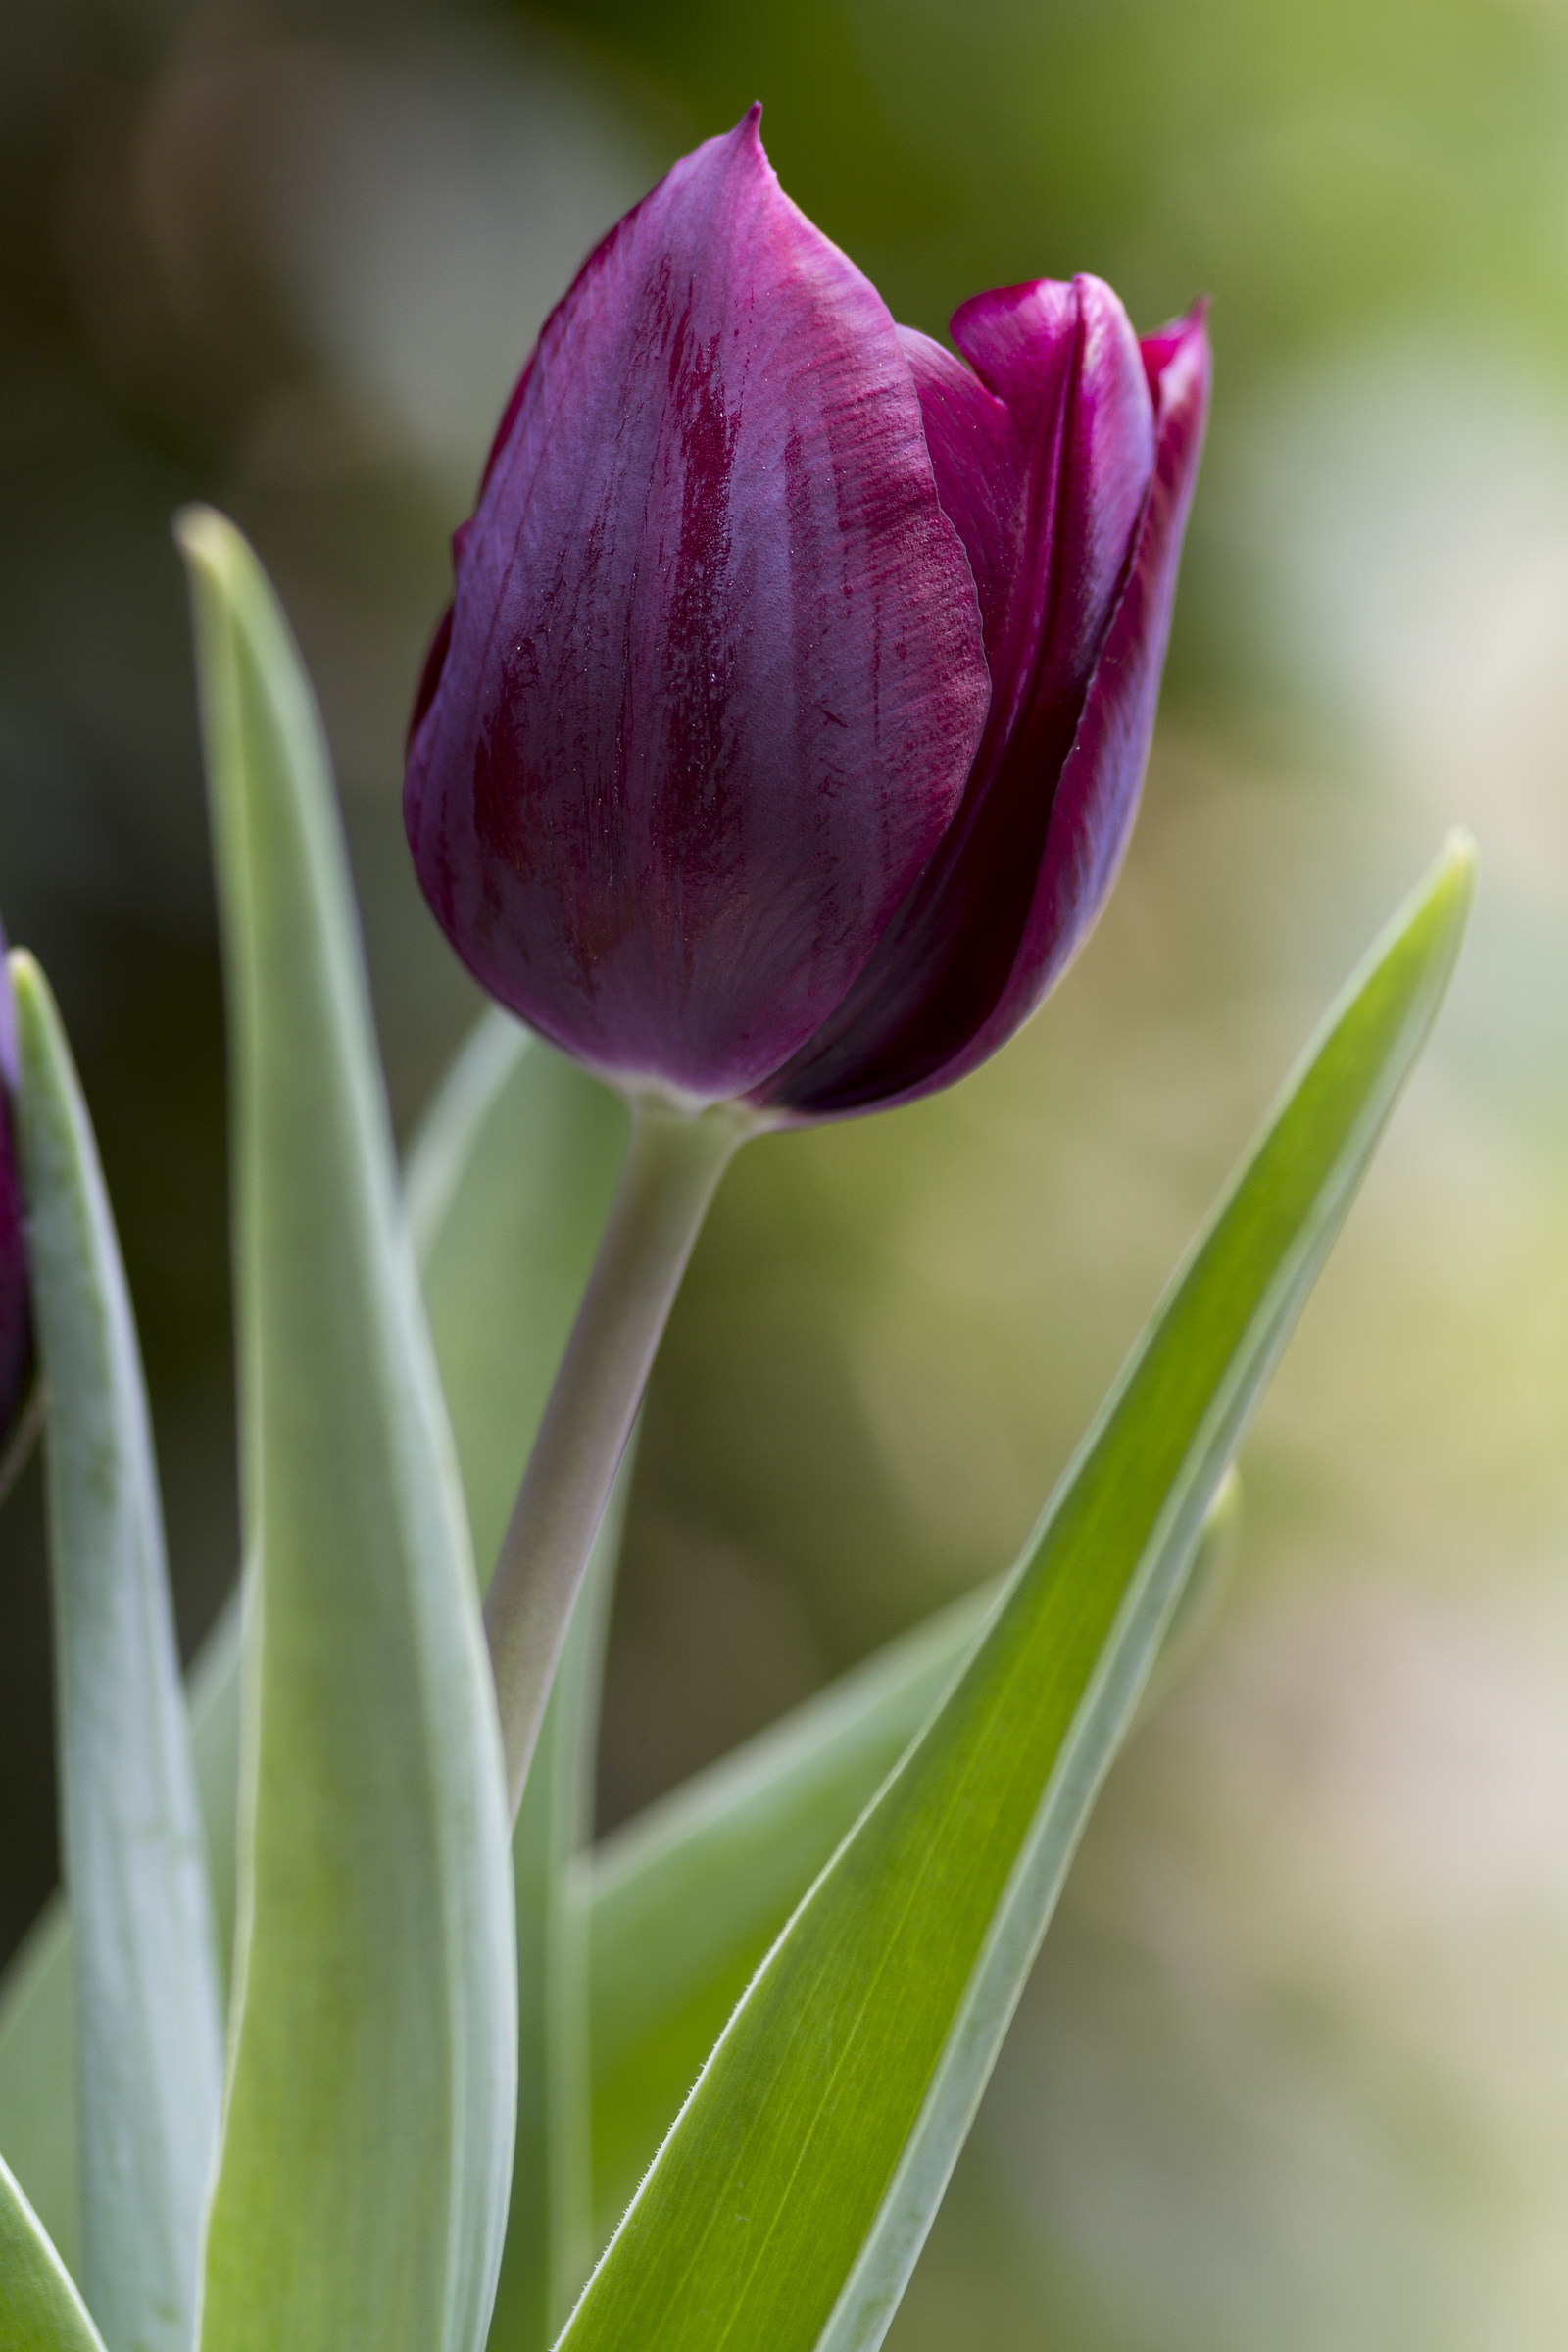 the Tulip...